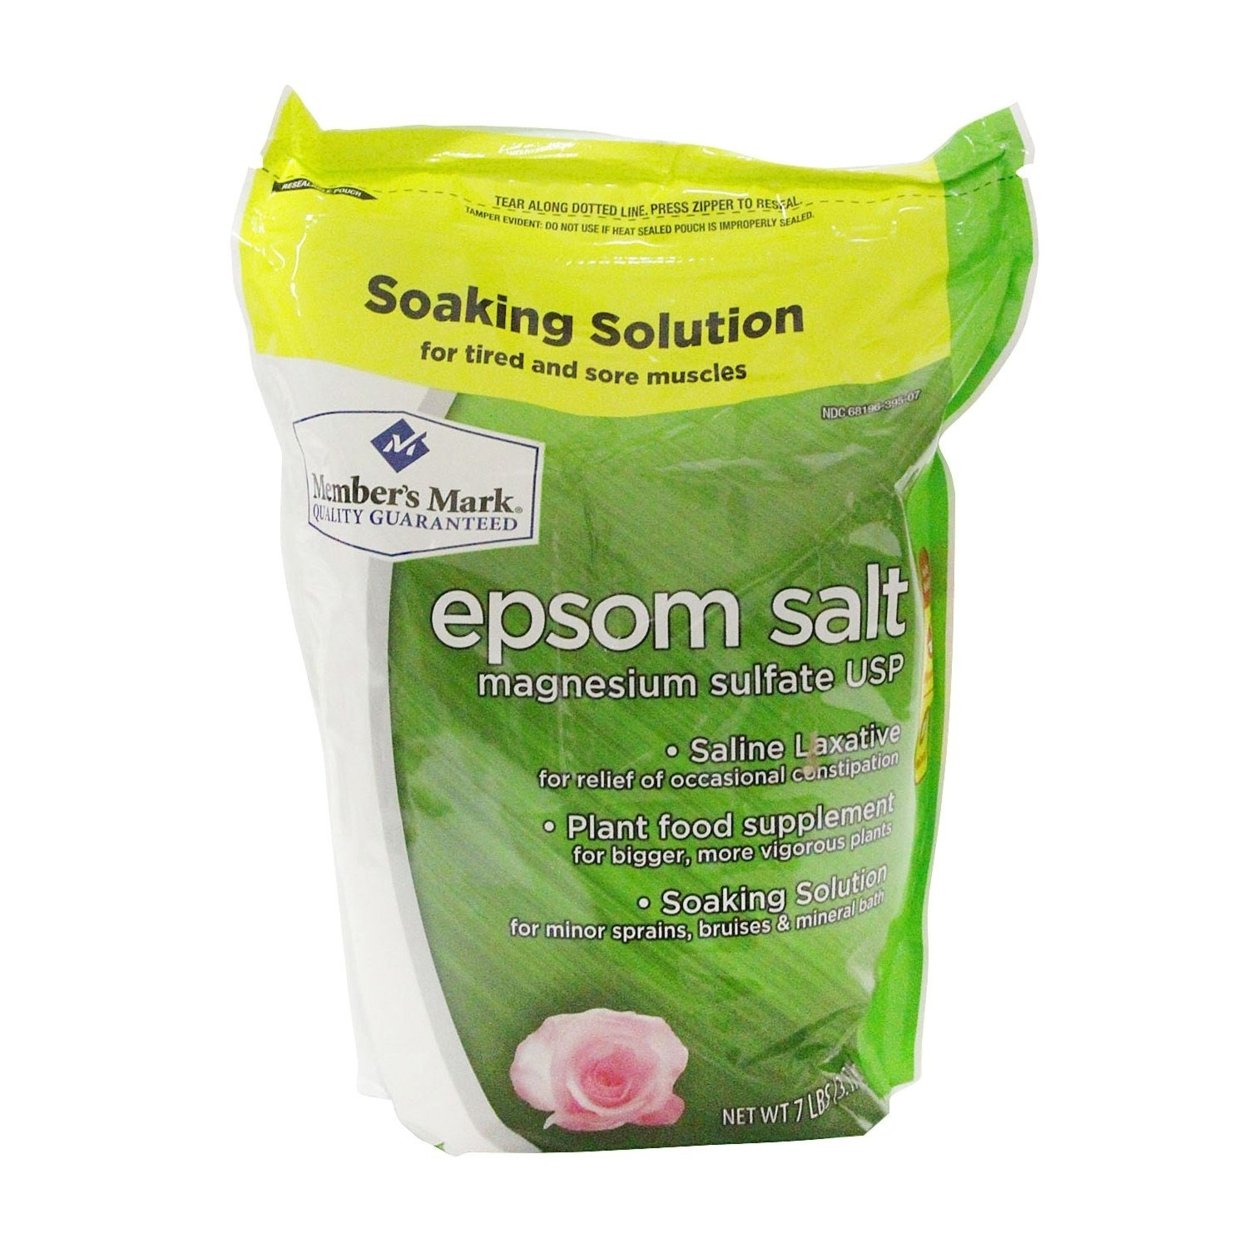 Member's Mark Epsom Salt (2 bags, 7 Pound each)